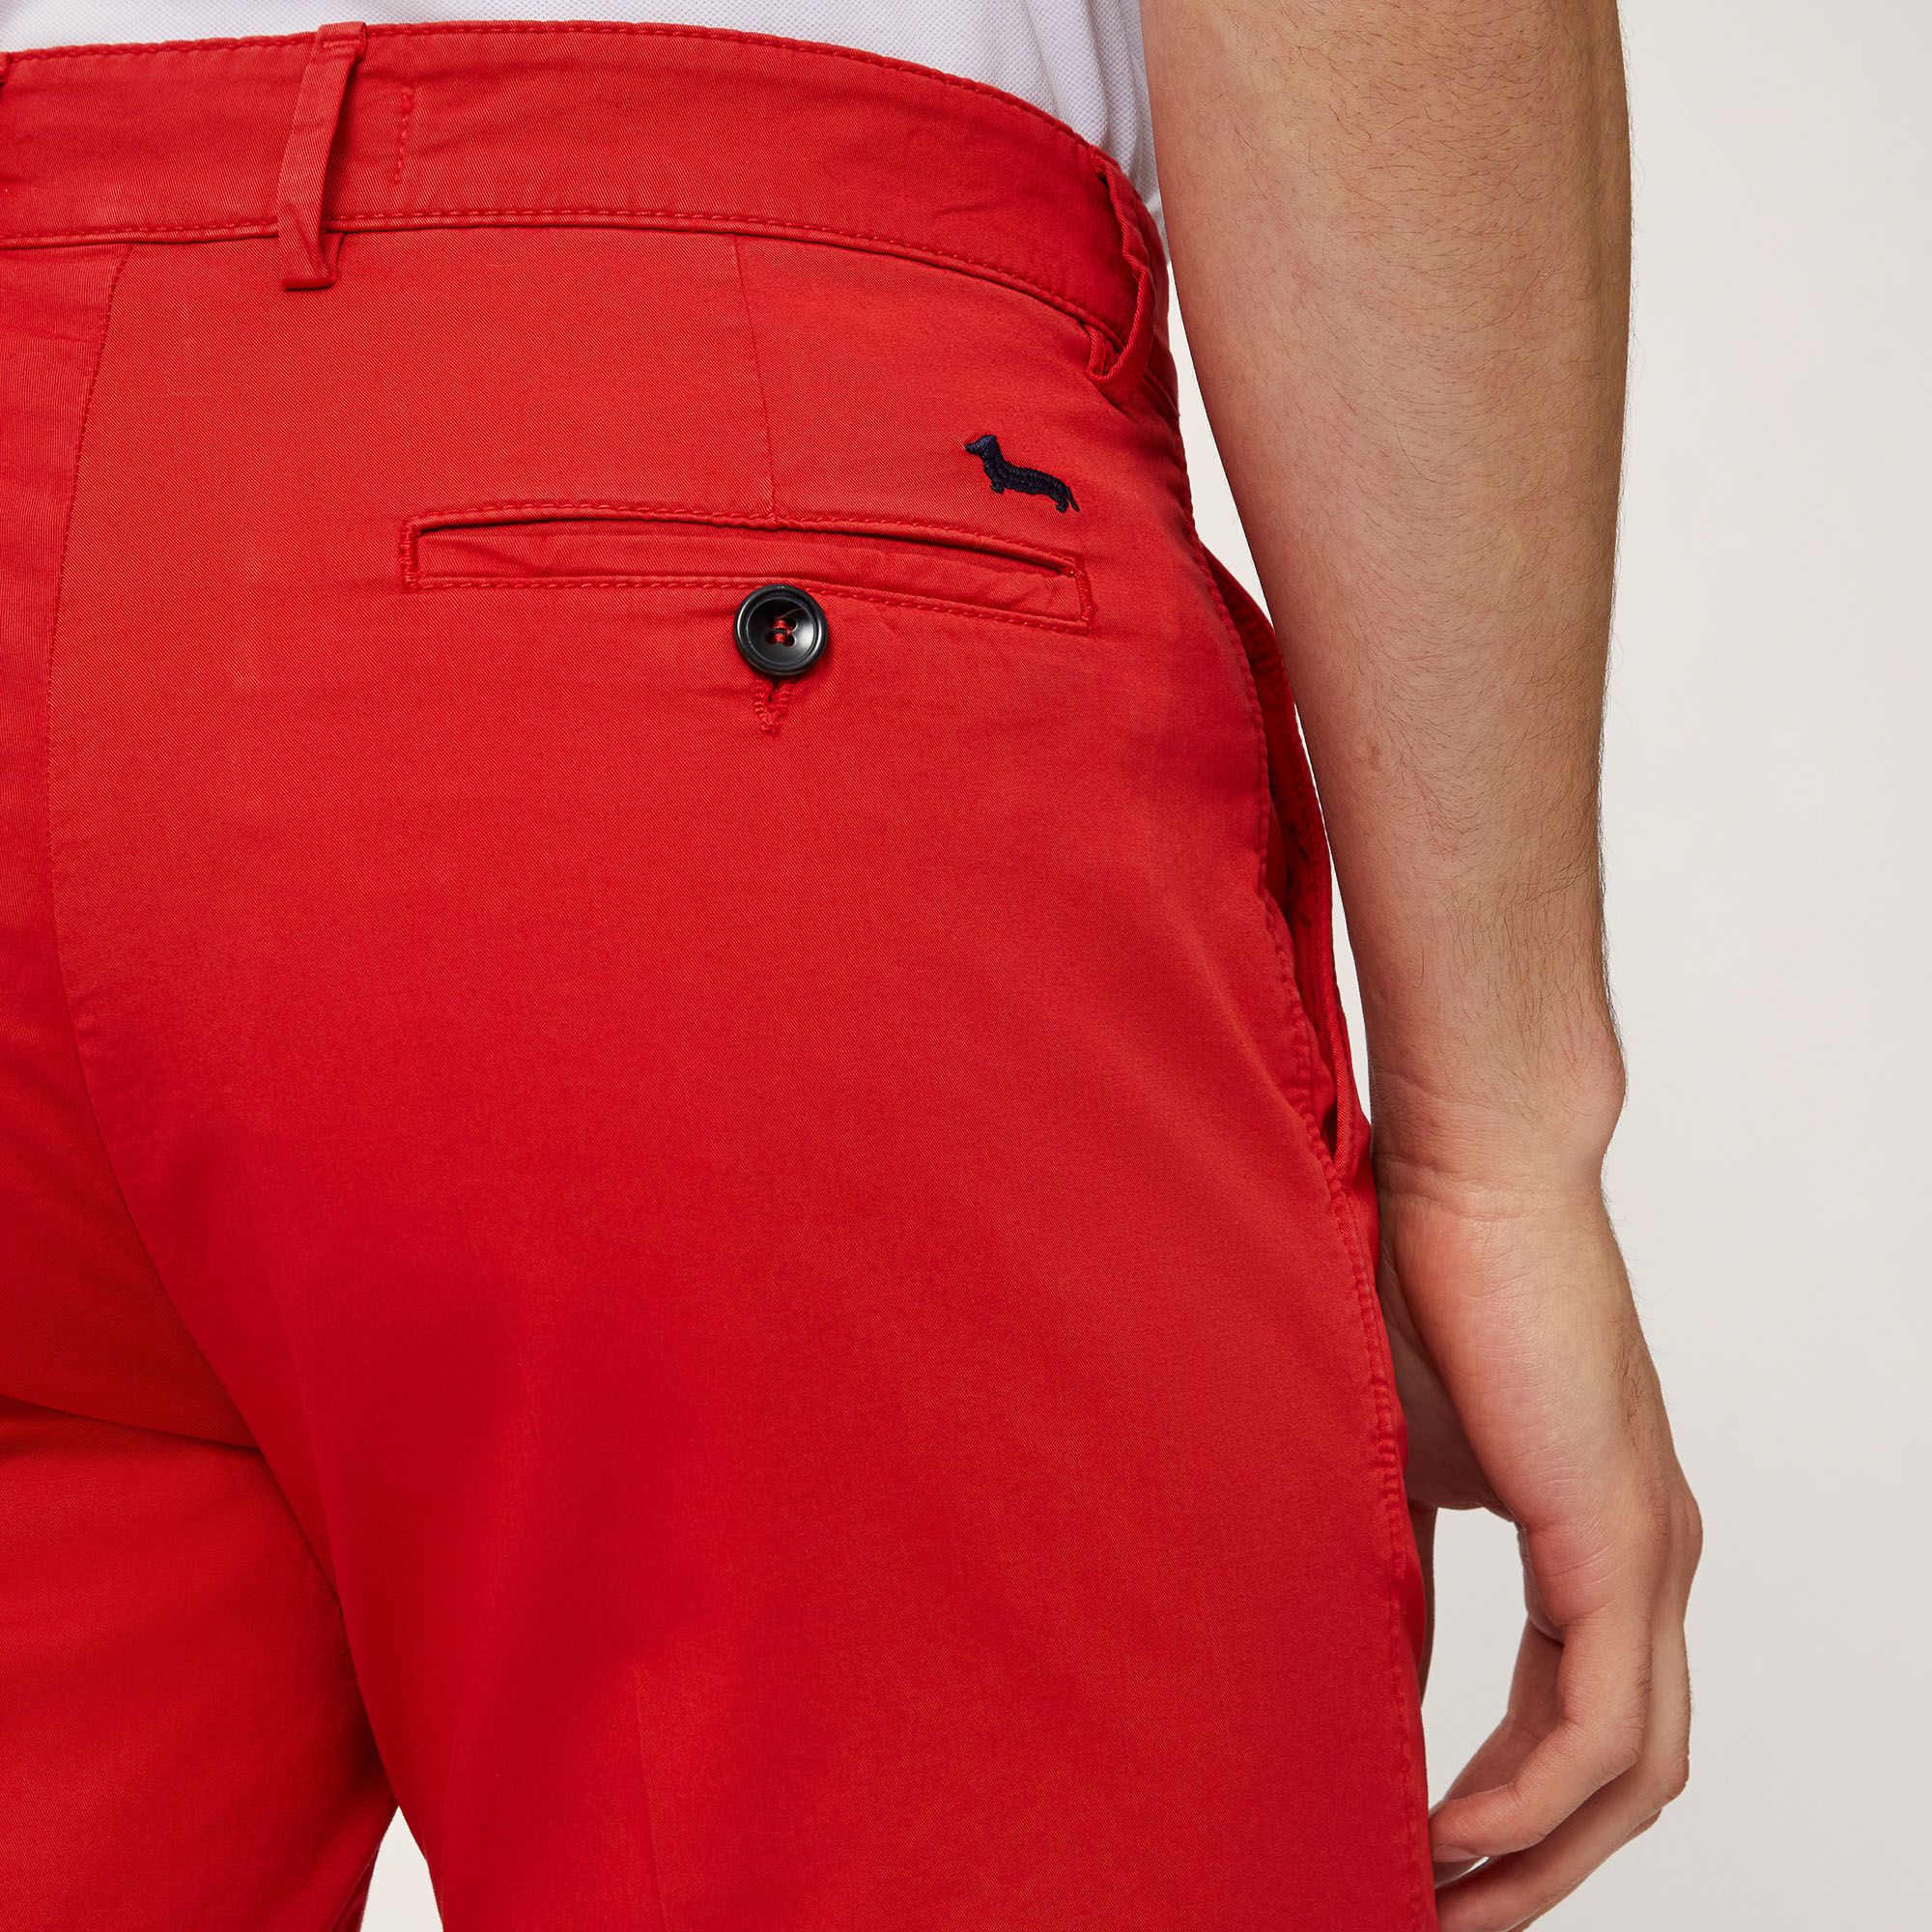 Regular Fit Bermuda Shorts, Light Red, large image number 2